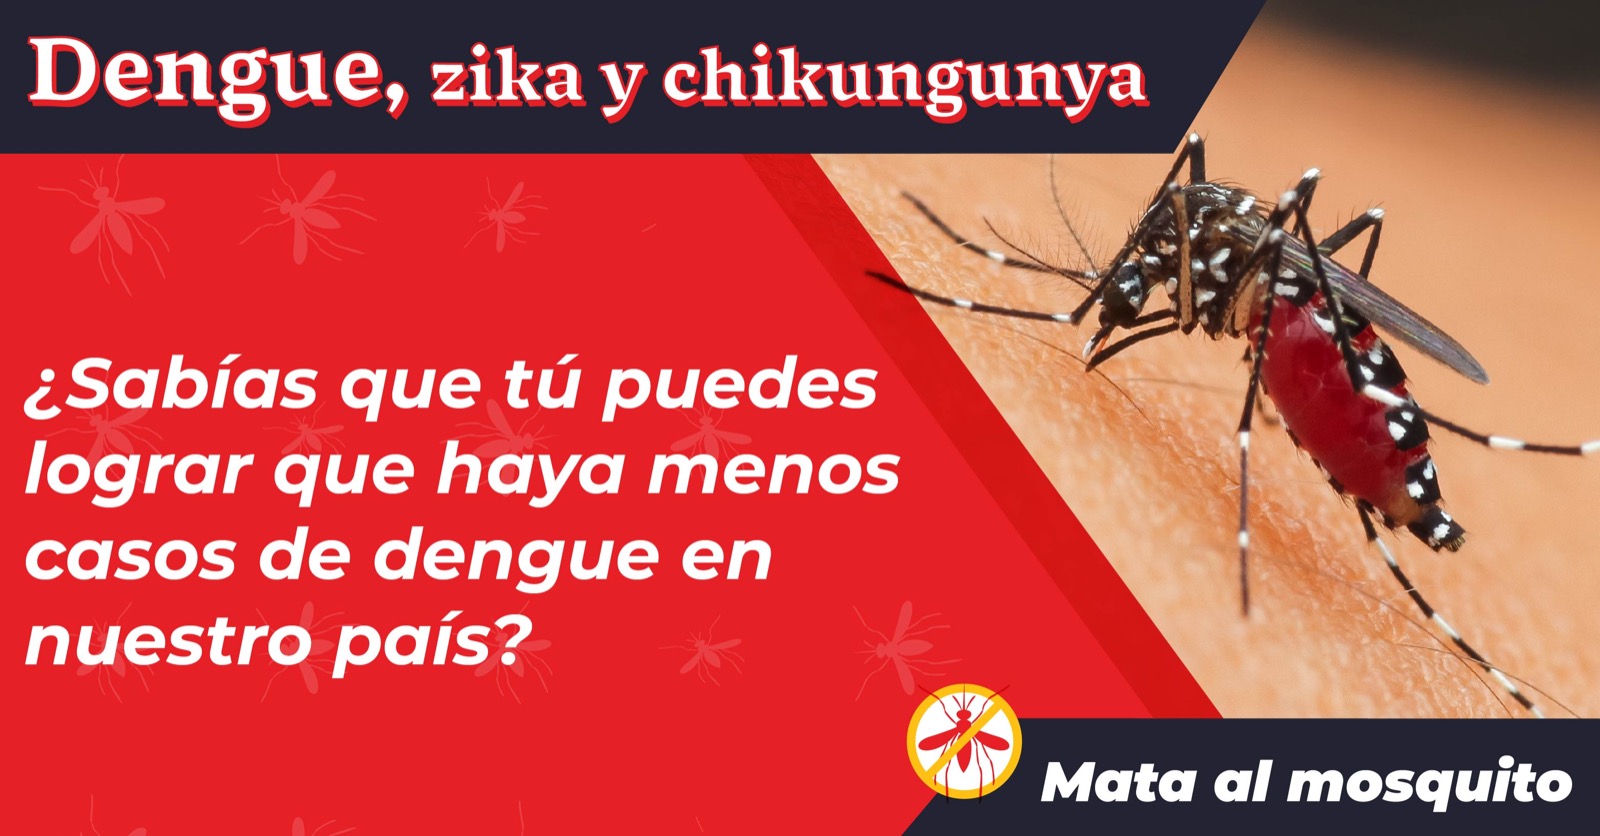 Imagen con el mosquito del dengue con el texto "¿Sabías que tú puedes lograr que haya menos casos de dengue en nuestro país?"